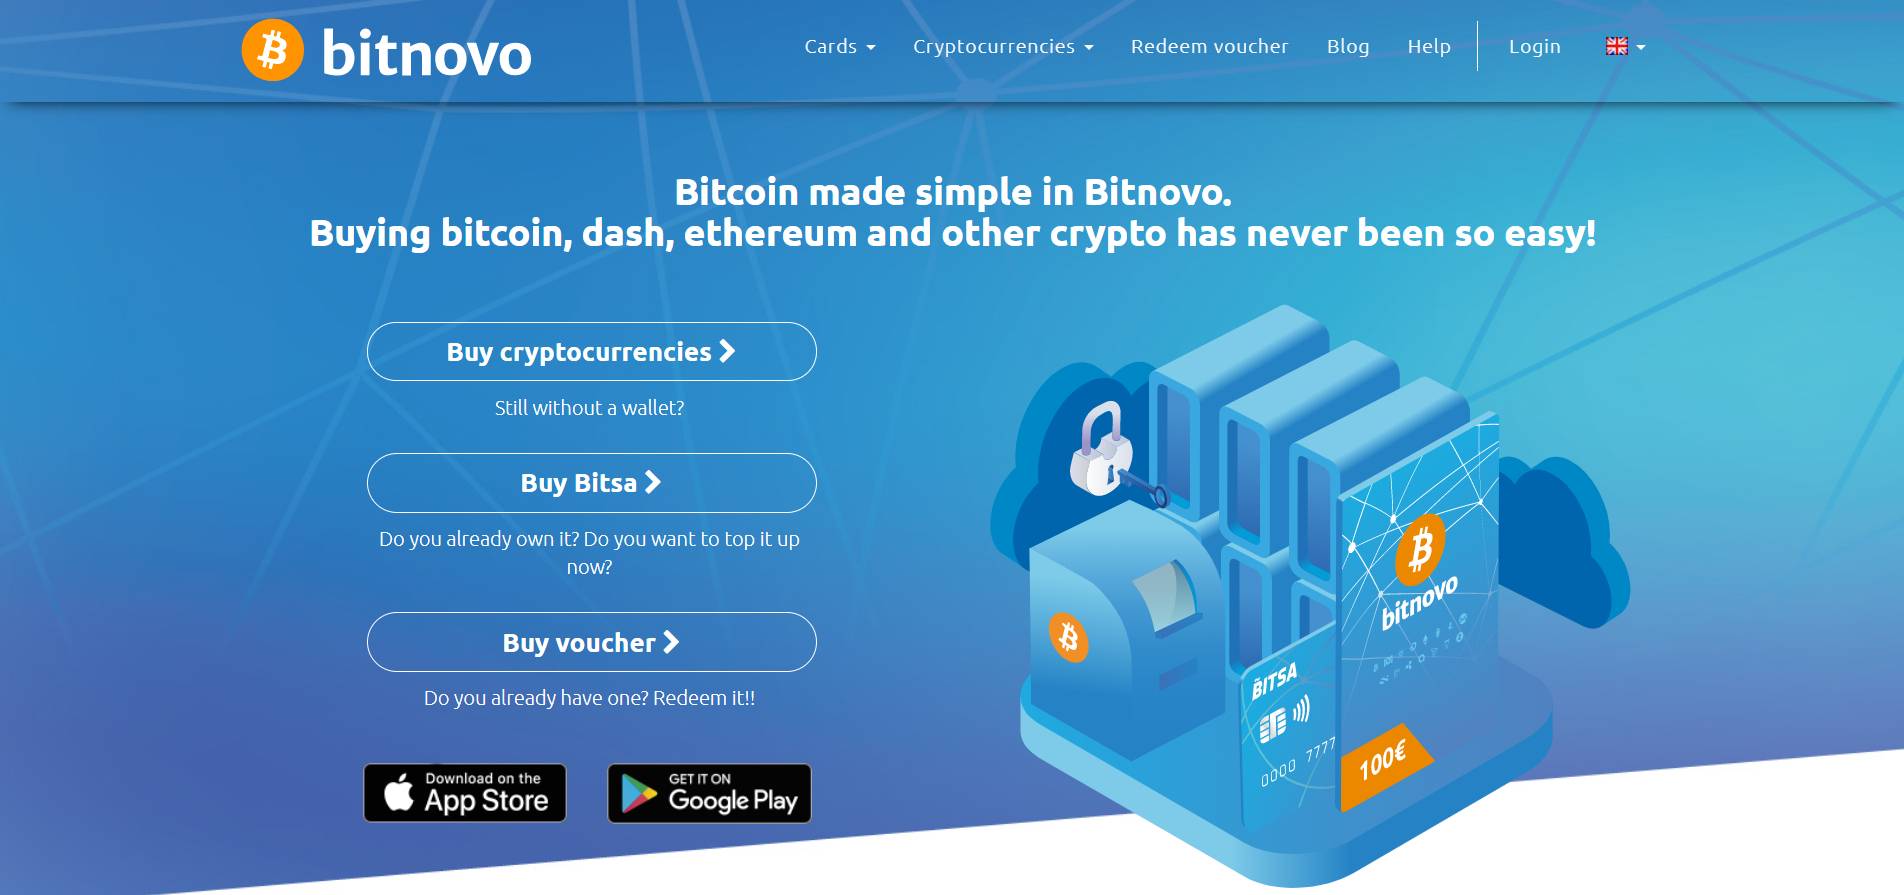 Buy Bitnovo crypto voucher 25€ for €20